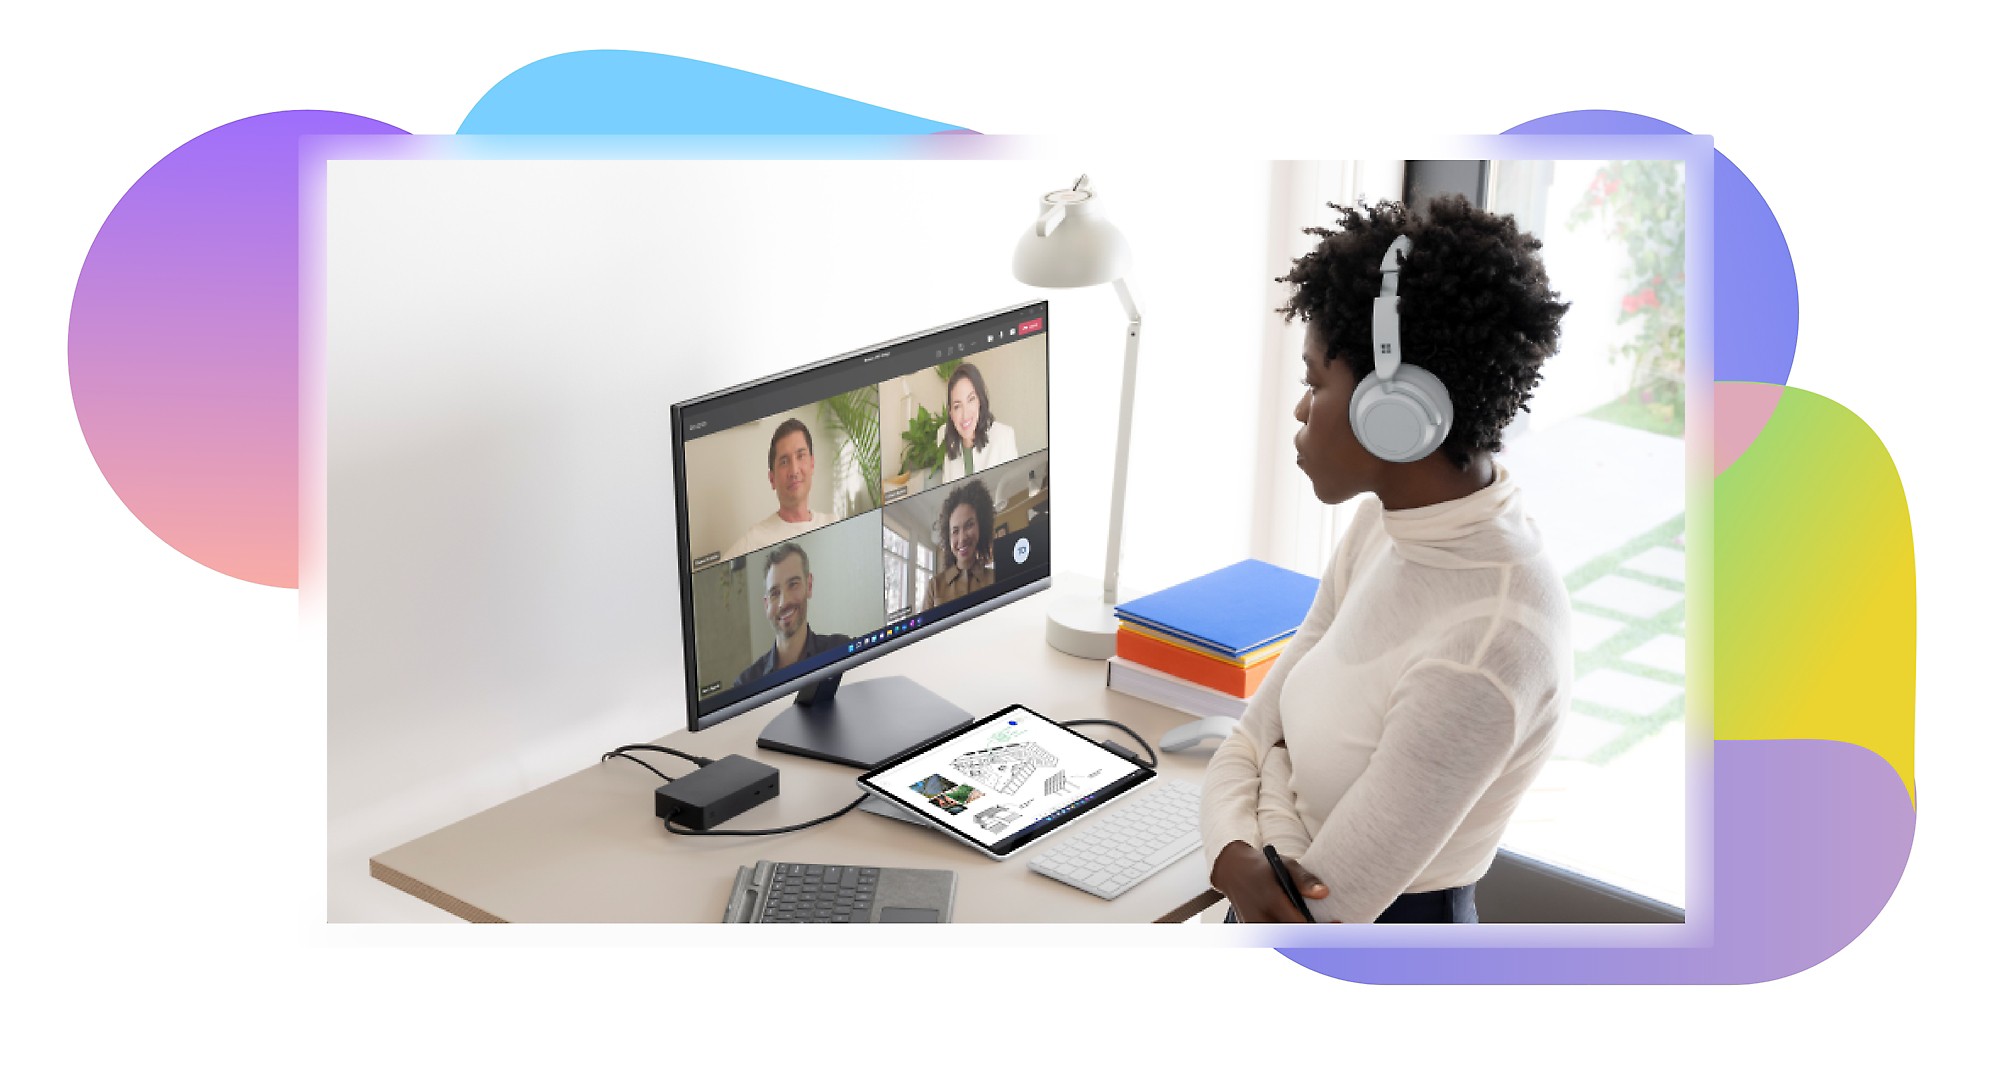 坐在桌前戴著耳罩式耳機的人，並與顯示在電腦螢幕上的另外四位參與者一起參與 Teams 視訊聊天。